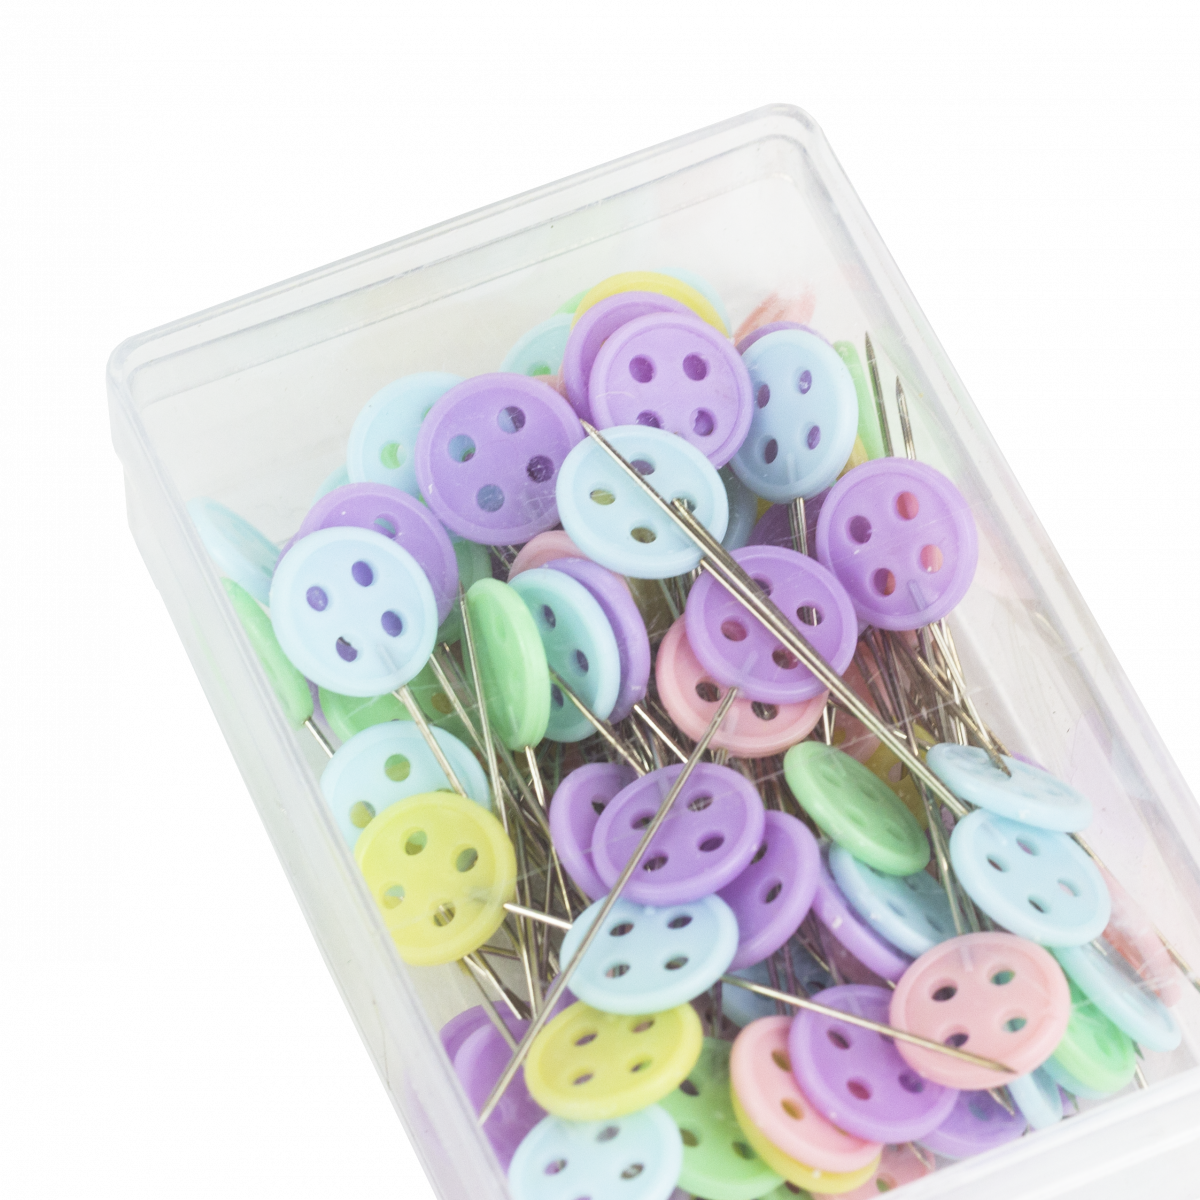 Wytino Botones de Cabeza de botón # 1 alfileres de Costura Planos Pernos de Acolchado Butterflyshape Craft Herramienta de Bricolaje Accesorios de Costura 